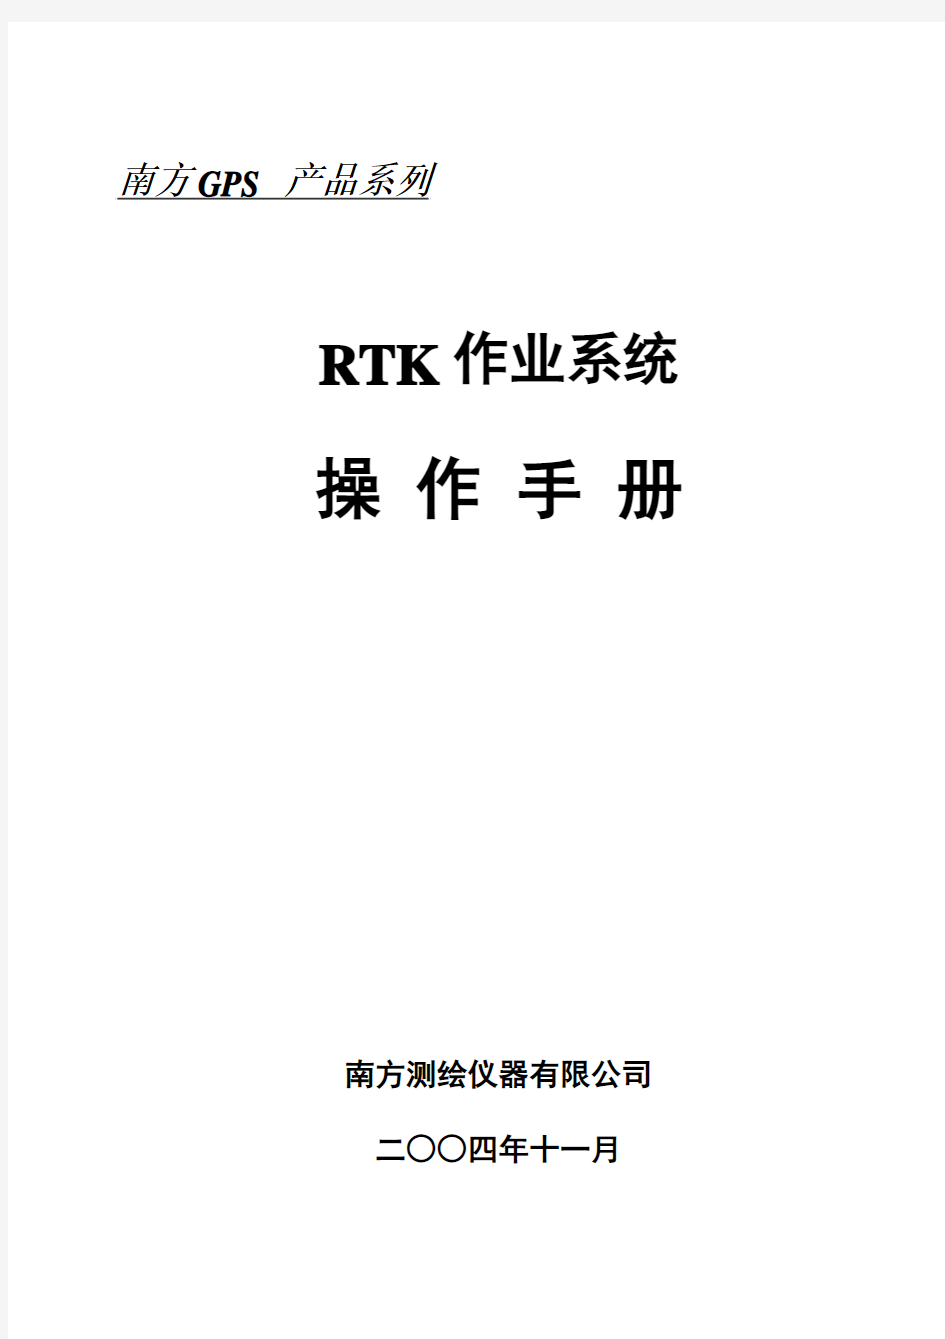 RTK作业系统操作手册